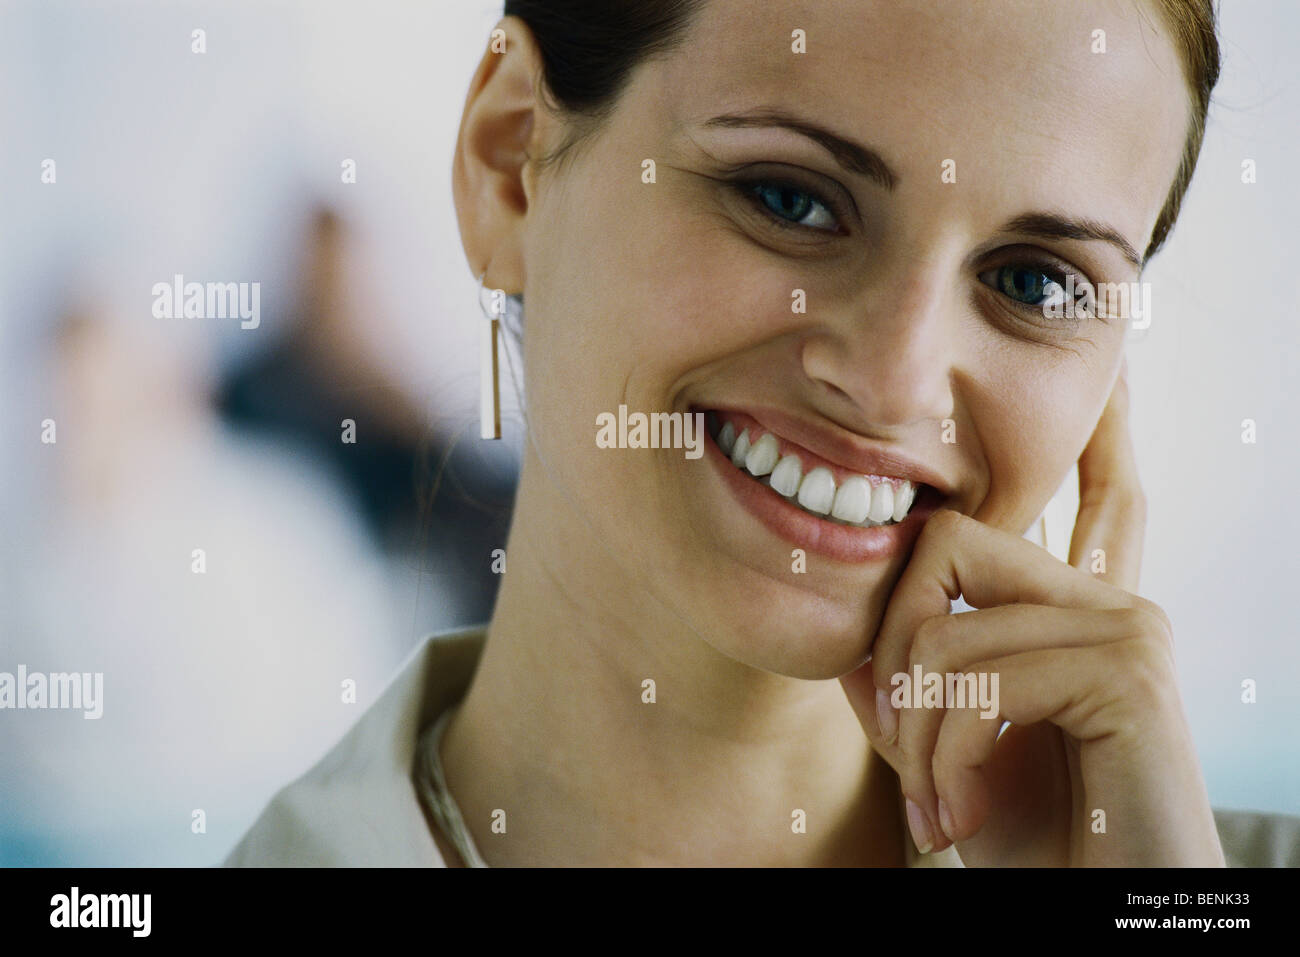 Young woman smiling at camera, penché face contre la main, portrait Banque D'Images